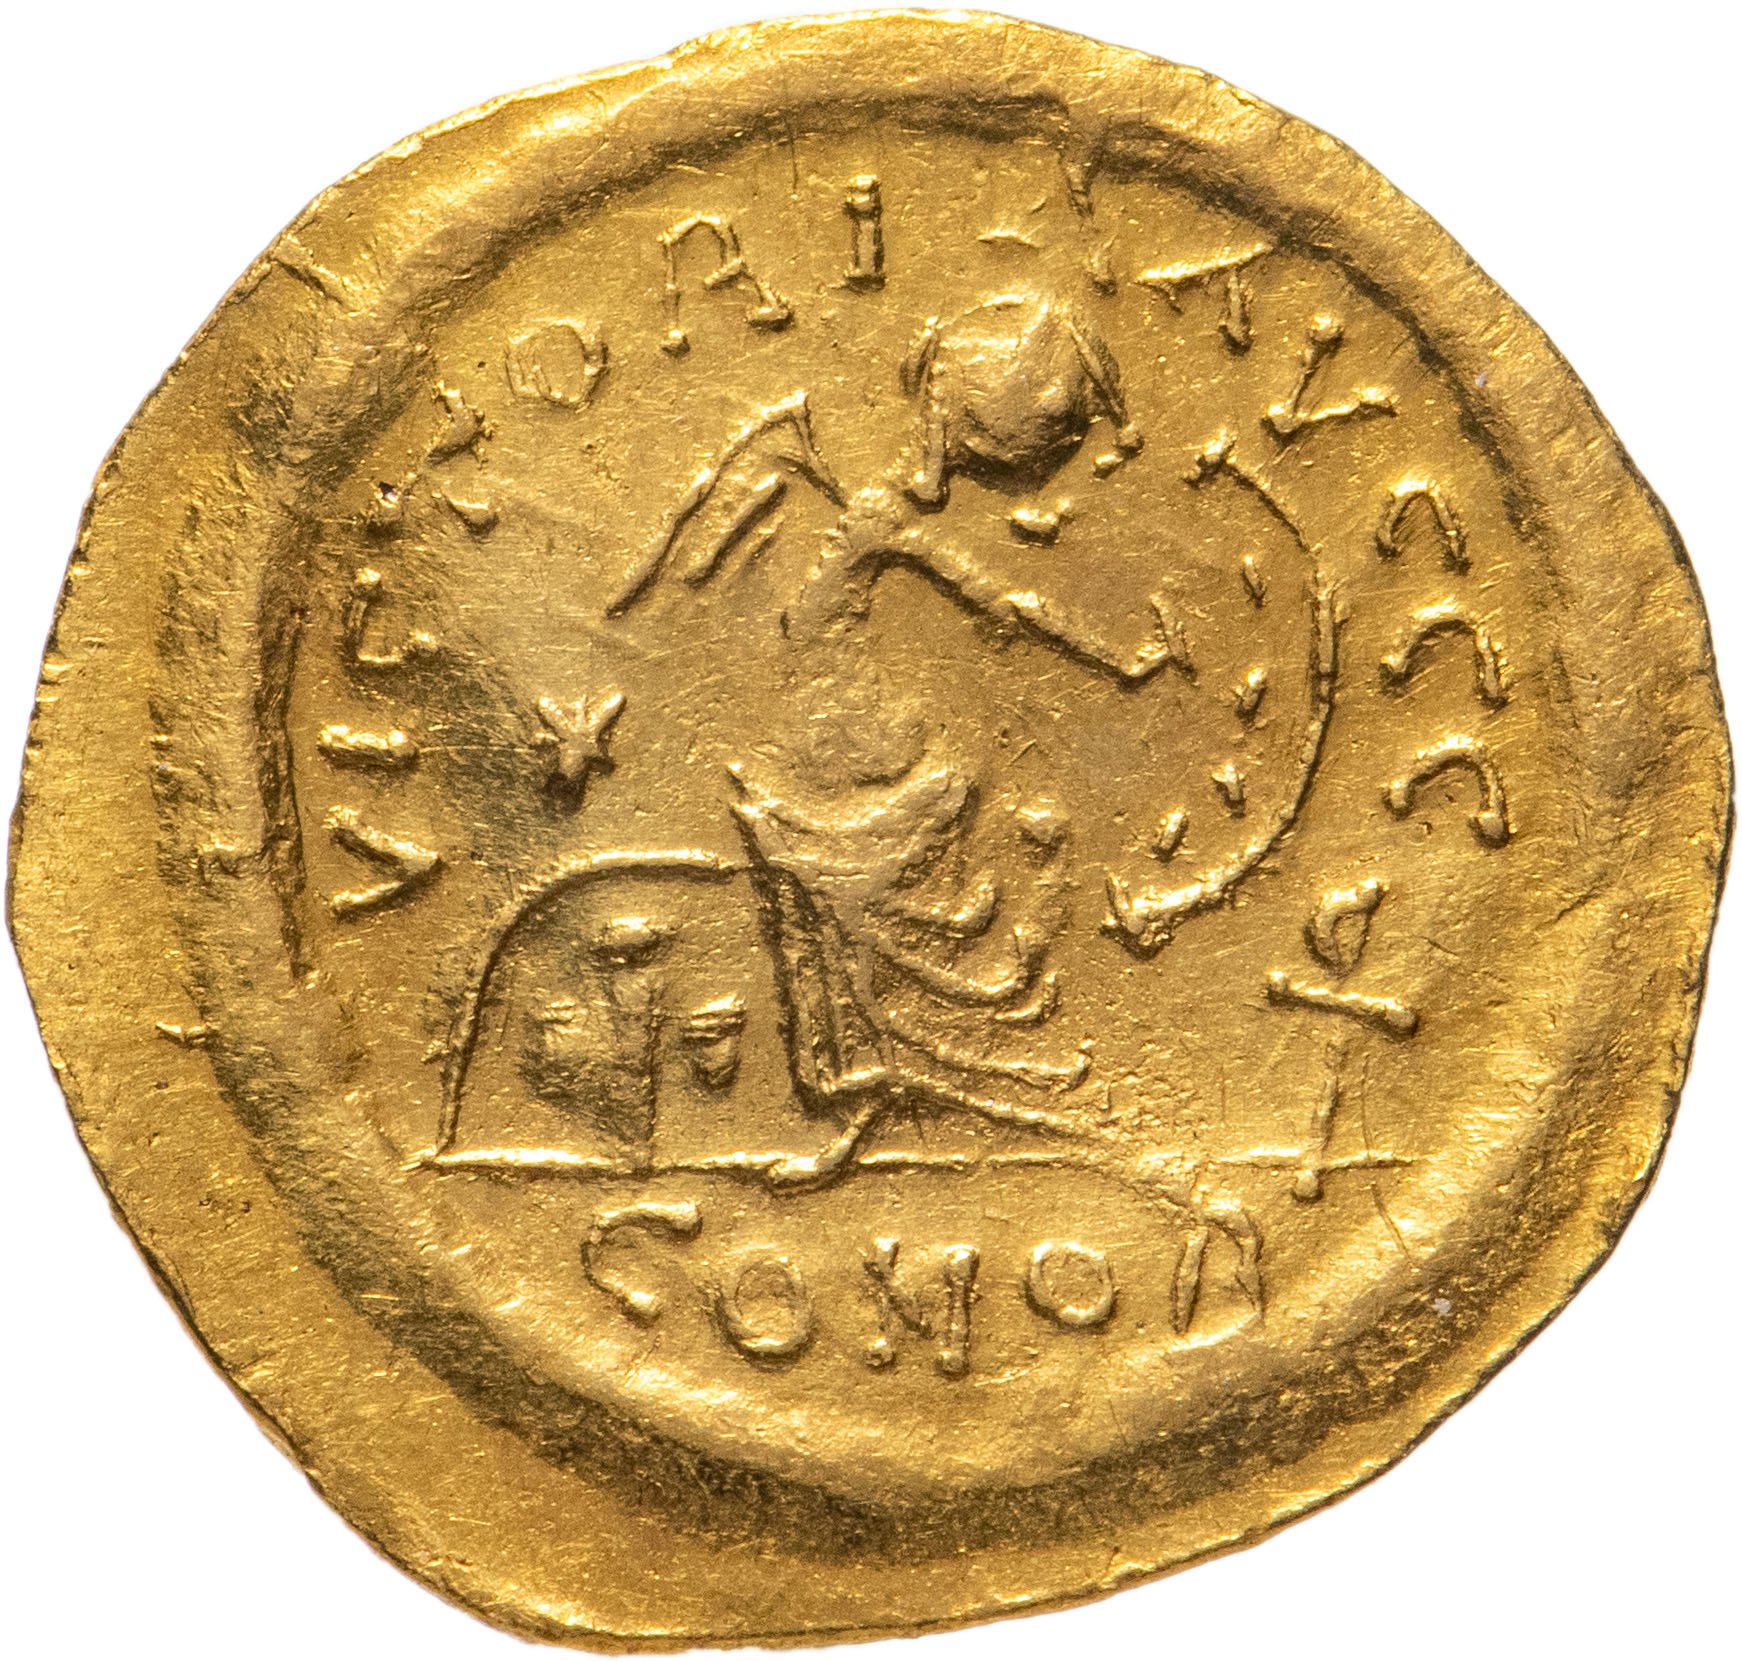 Бронзовая монета византии 4 буквы. Монеты Византии. Византийская Империя монета Юстиниан. Византийская монета с изображением Юстиниана.